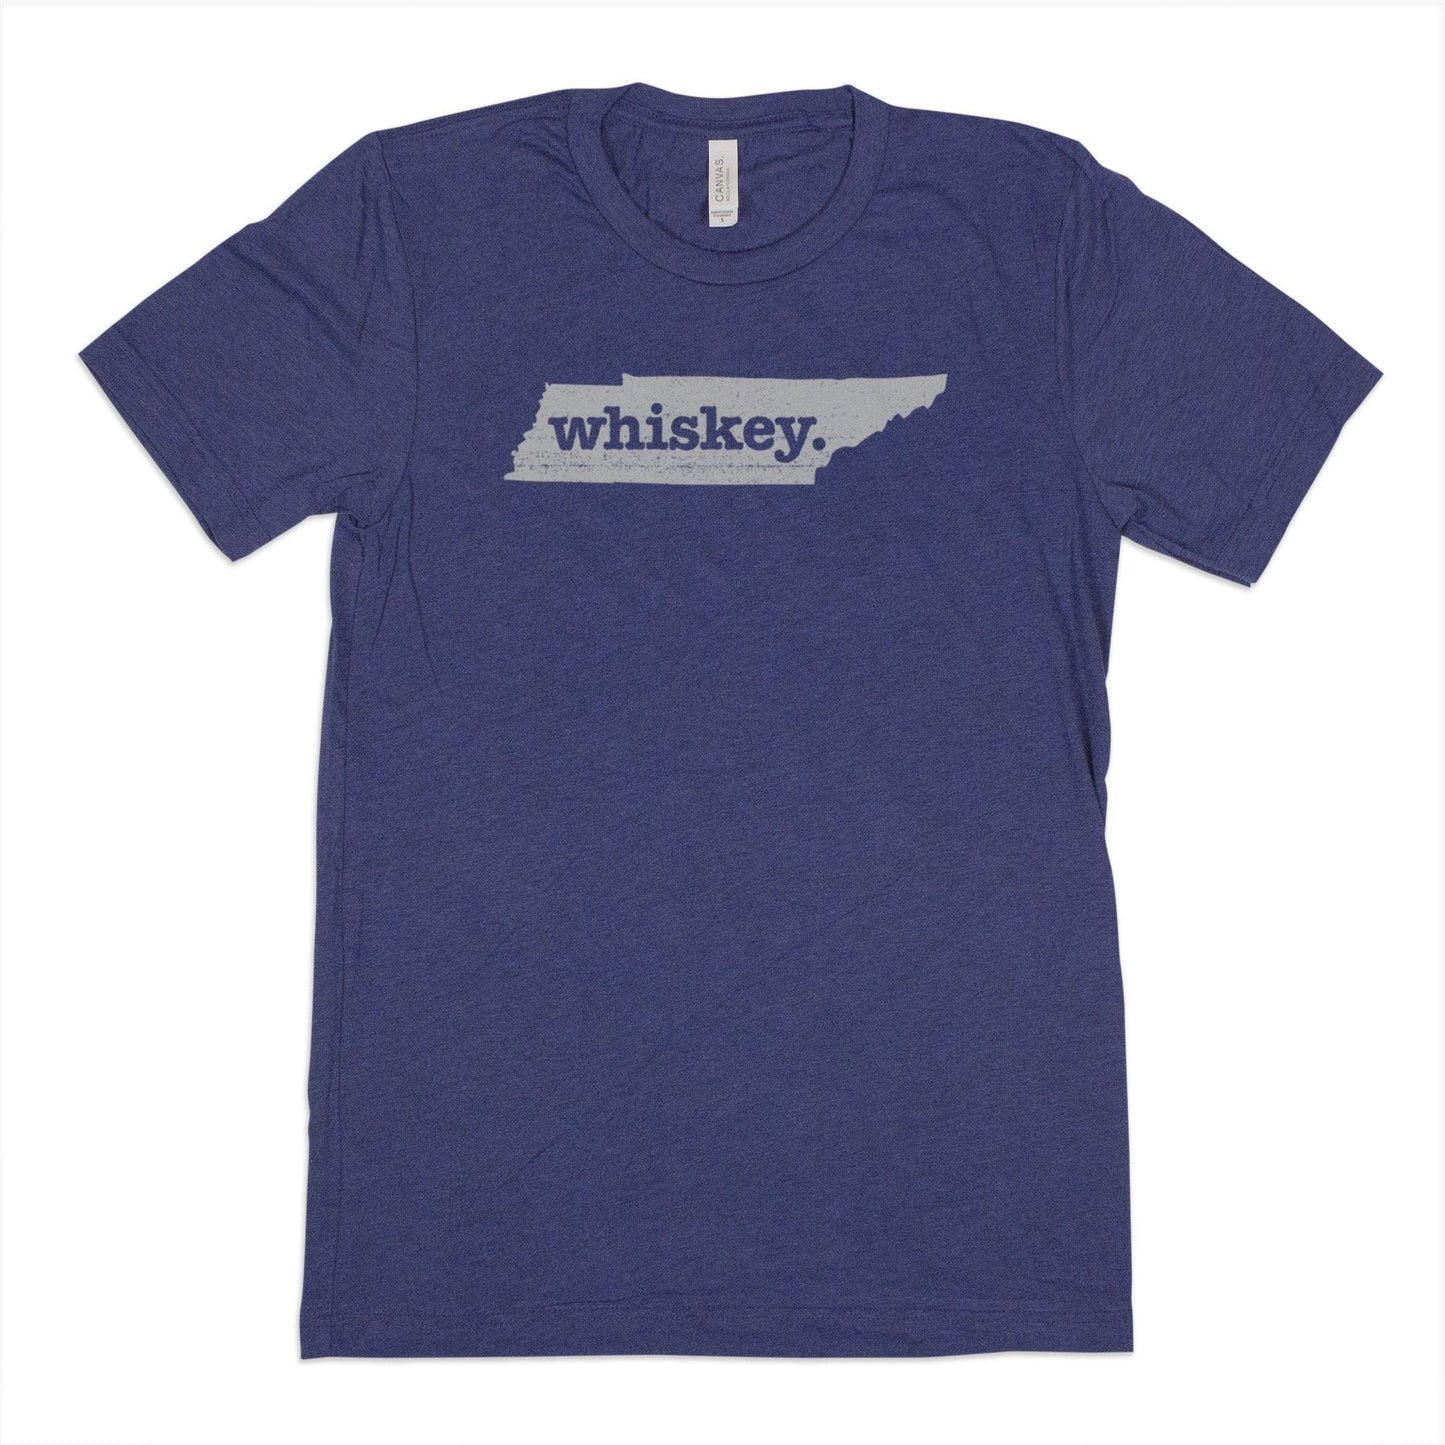 beer. Men's Unisex T-Shirt - South Dakota